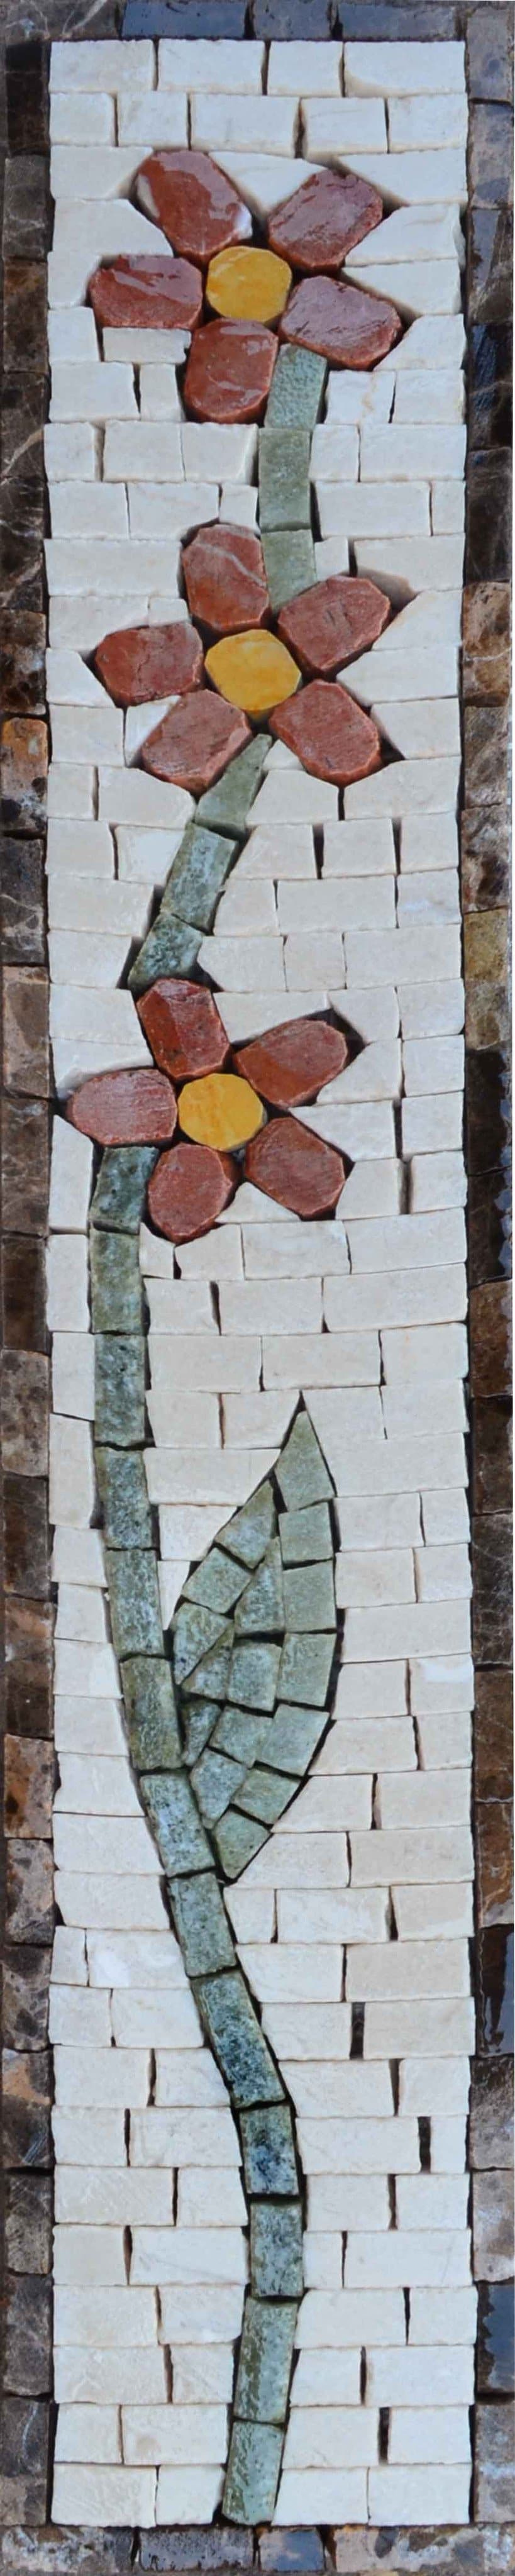 Mosaic Designs - Gerbera